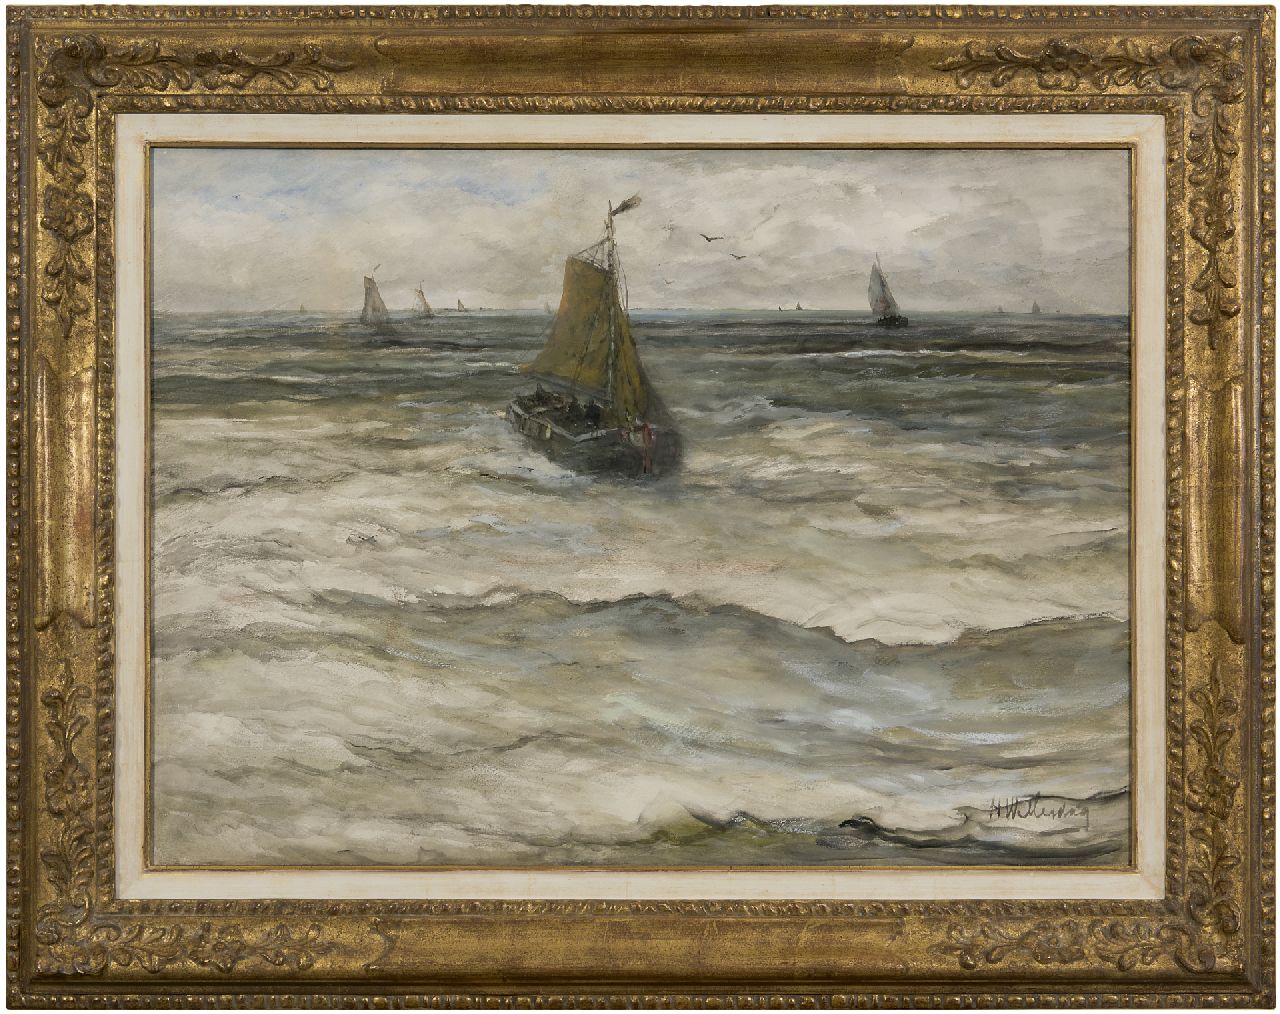 Mesdag H.W.  | Hendrik Willem Mesdag | Aquarellen en tekeningen te koop aangeboden | Binnenkomende bom, aquarel op papier 53,0 x 73,5 cm, gesigneerd rechtsonder